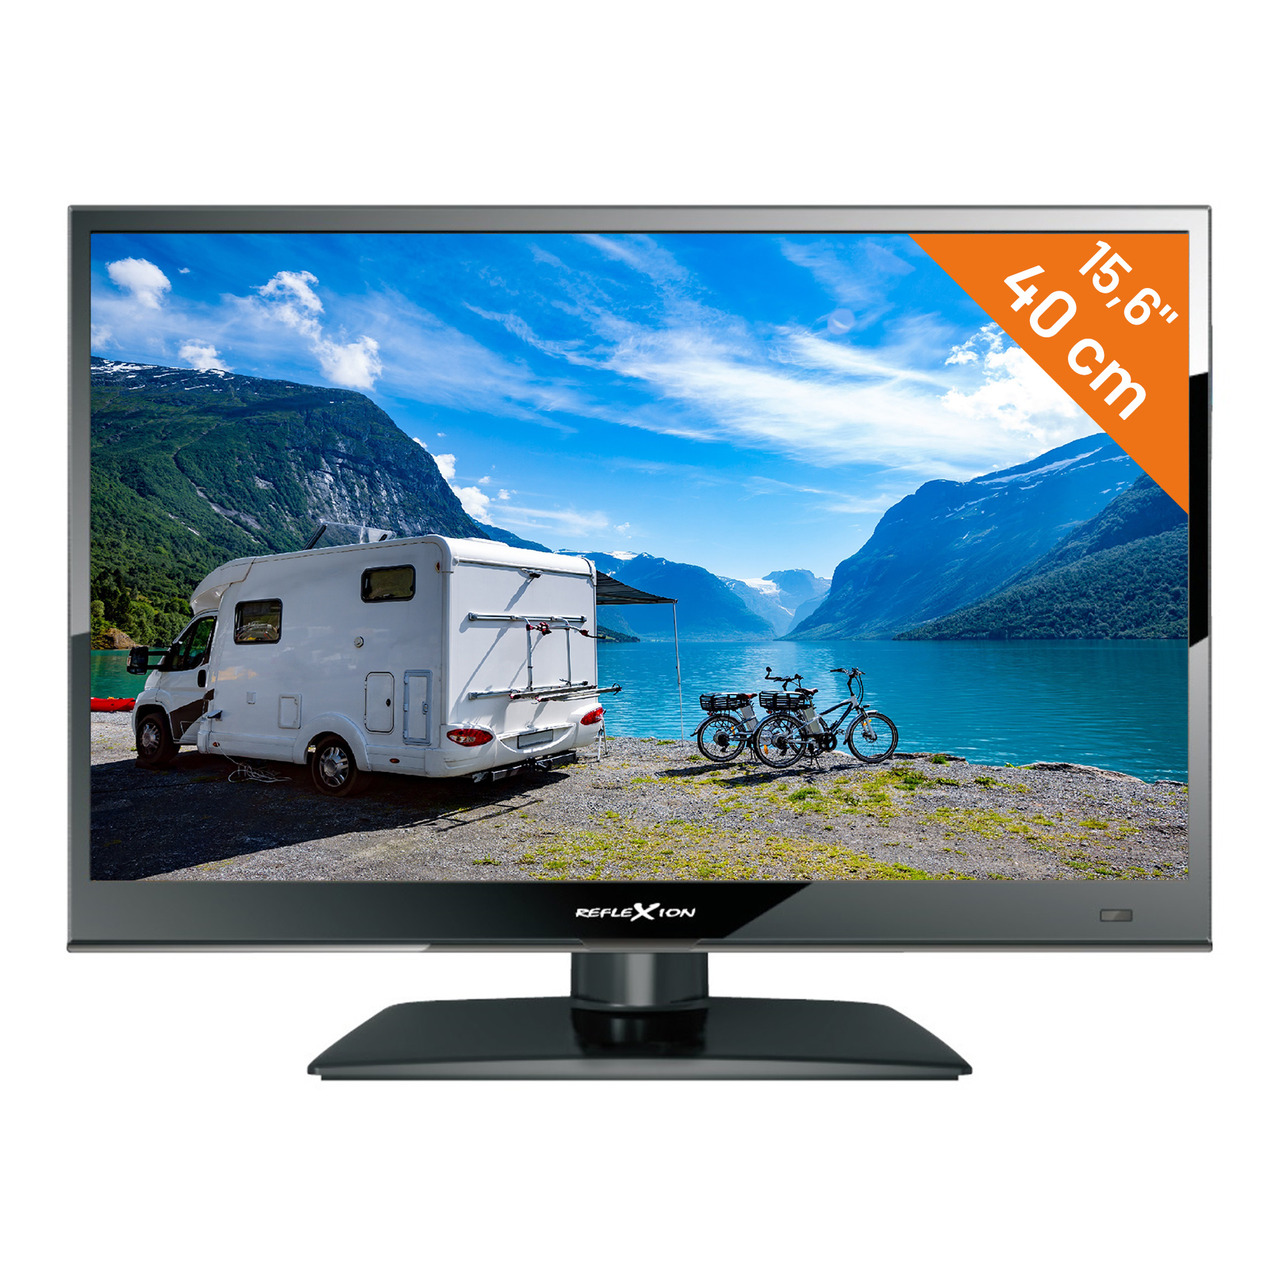 Reflexion 12-24-V-LED-TV LEDW160- 40 cm (15-6)- DVB-S-S2-C-T-T2- Full-HD- Camping